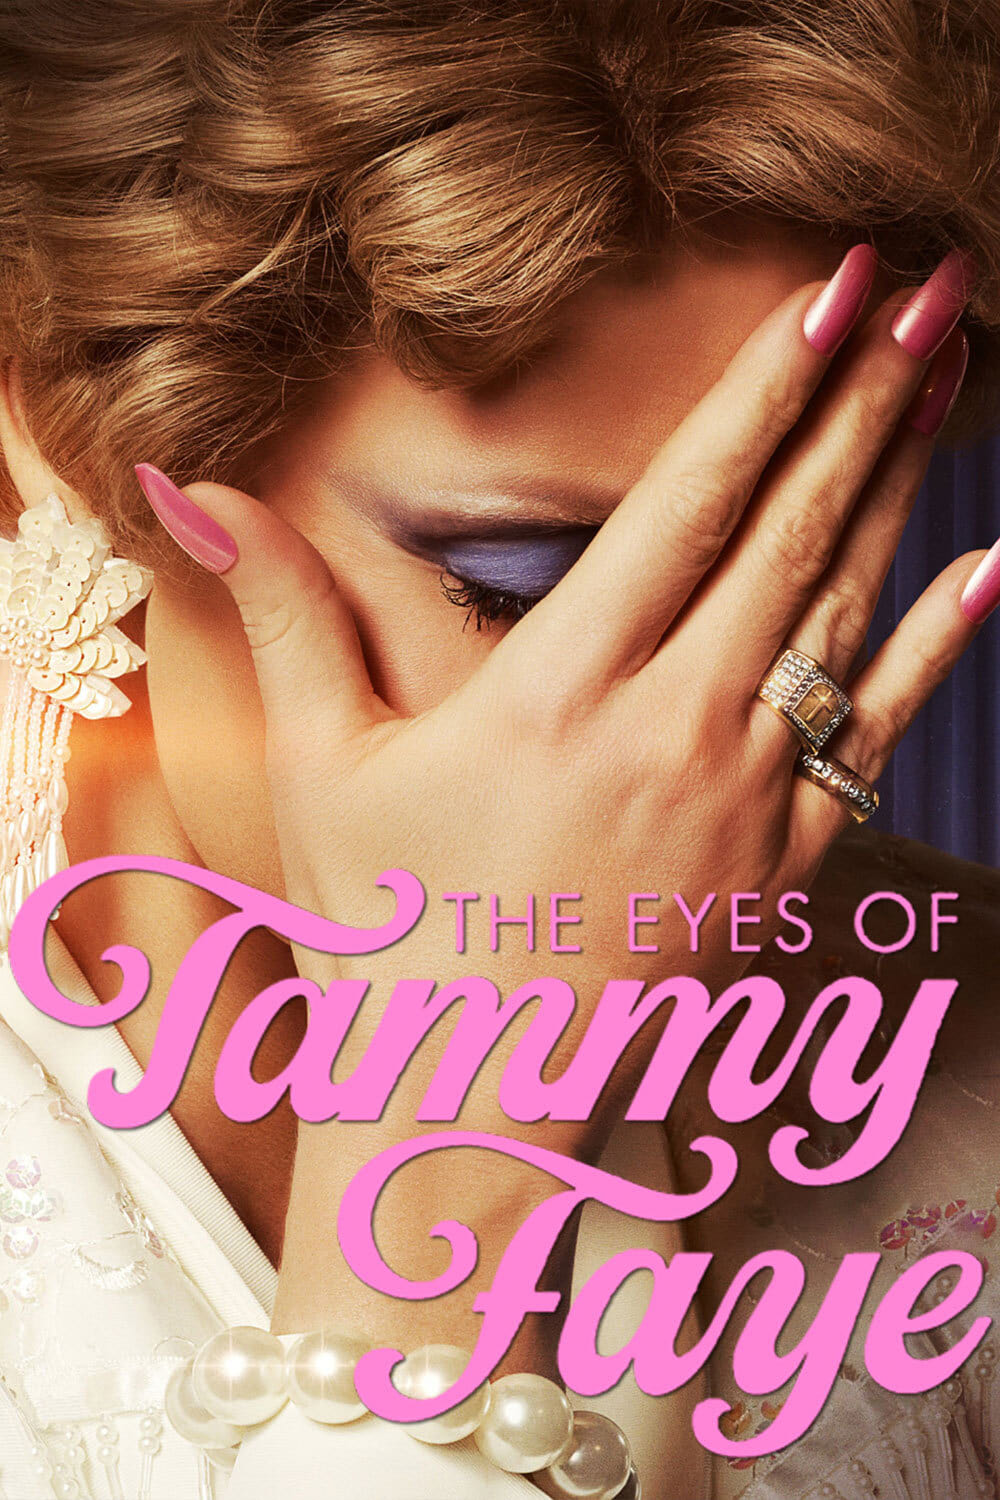 Đôi Mắt Của Tammy Faye (The Eyes of Tammy Faye) [2021]